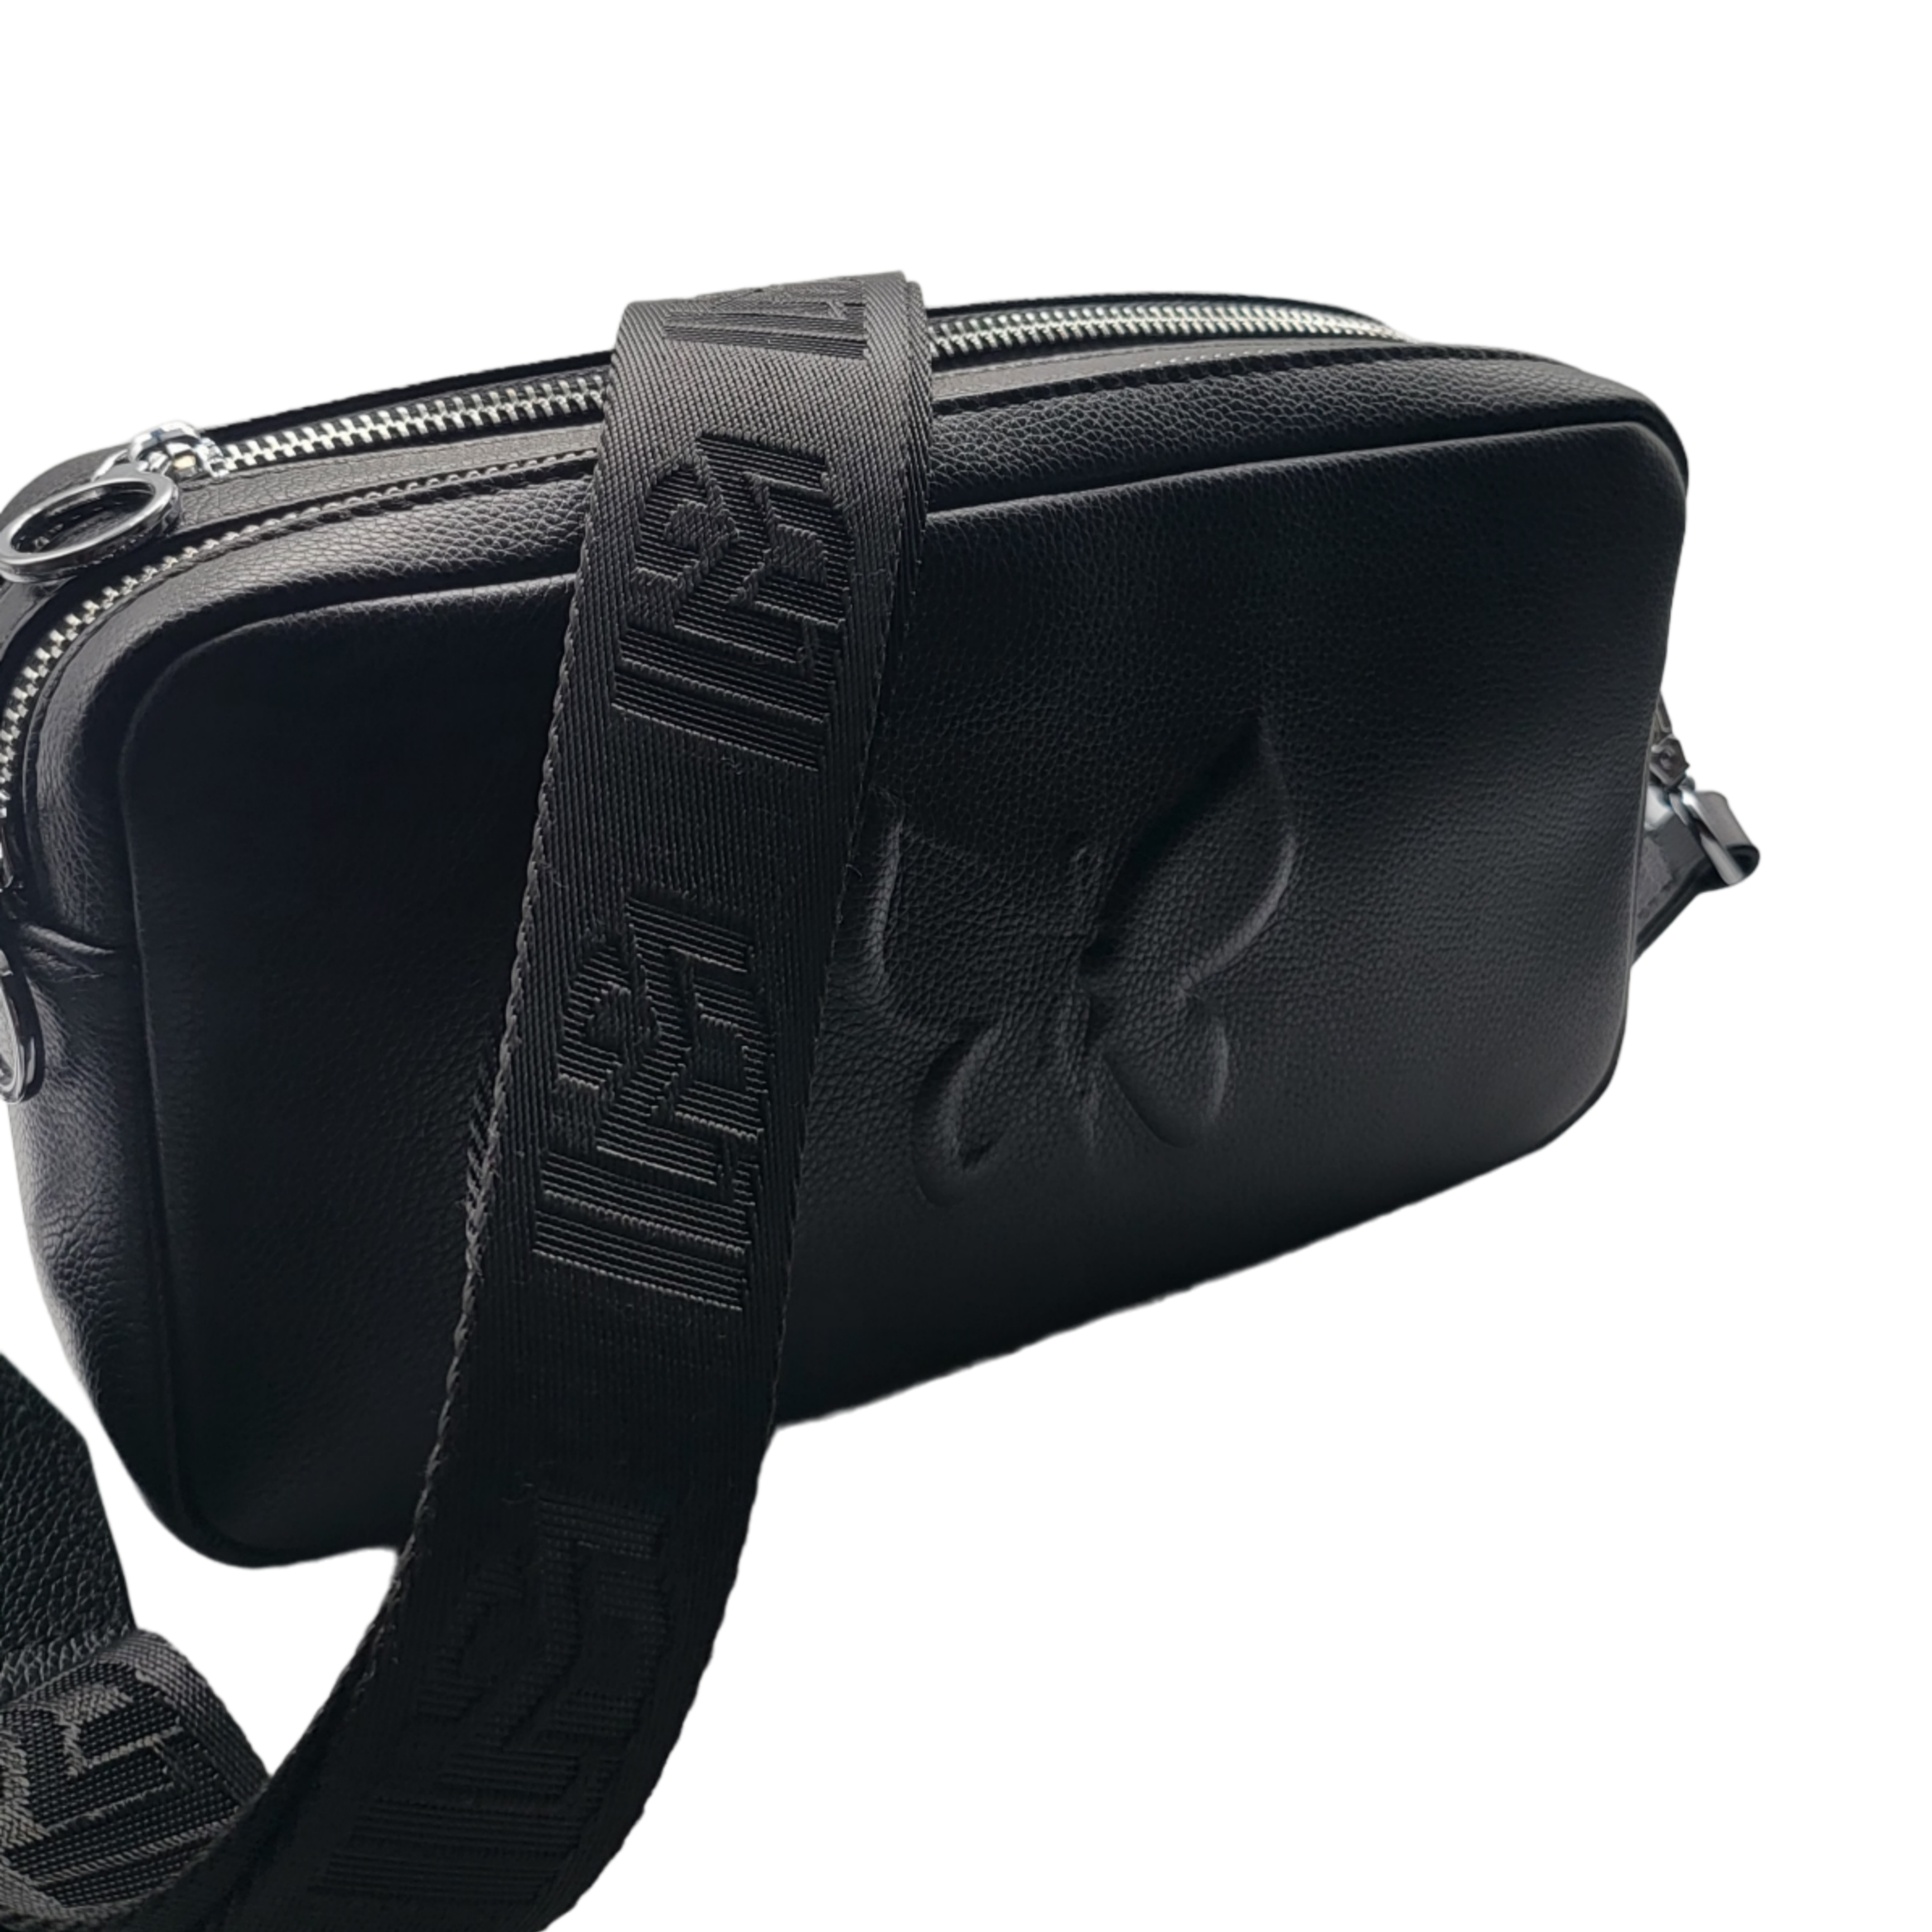 KABAQOO Women's Multipocket Crossbody Bag Zipper Girls Purse Travel  Shoulder Messenger Bags Black - Walmart.com